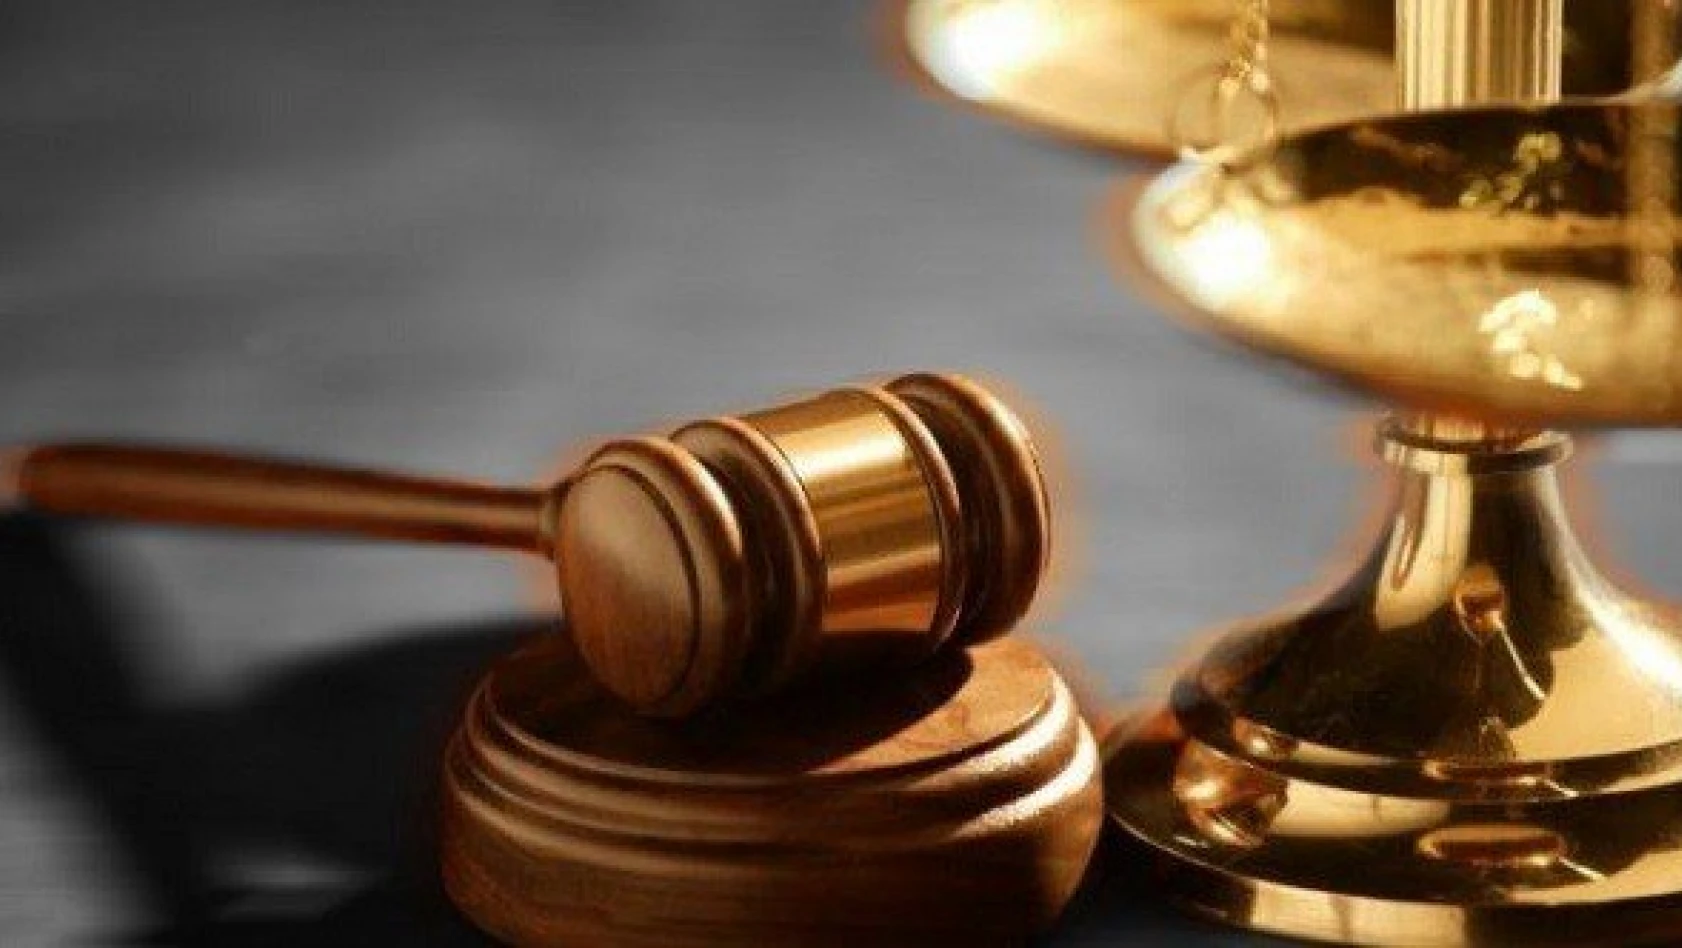 Kastamonu'daki FETÖ davasında 11 sanıktan biri beraat etti